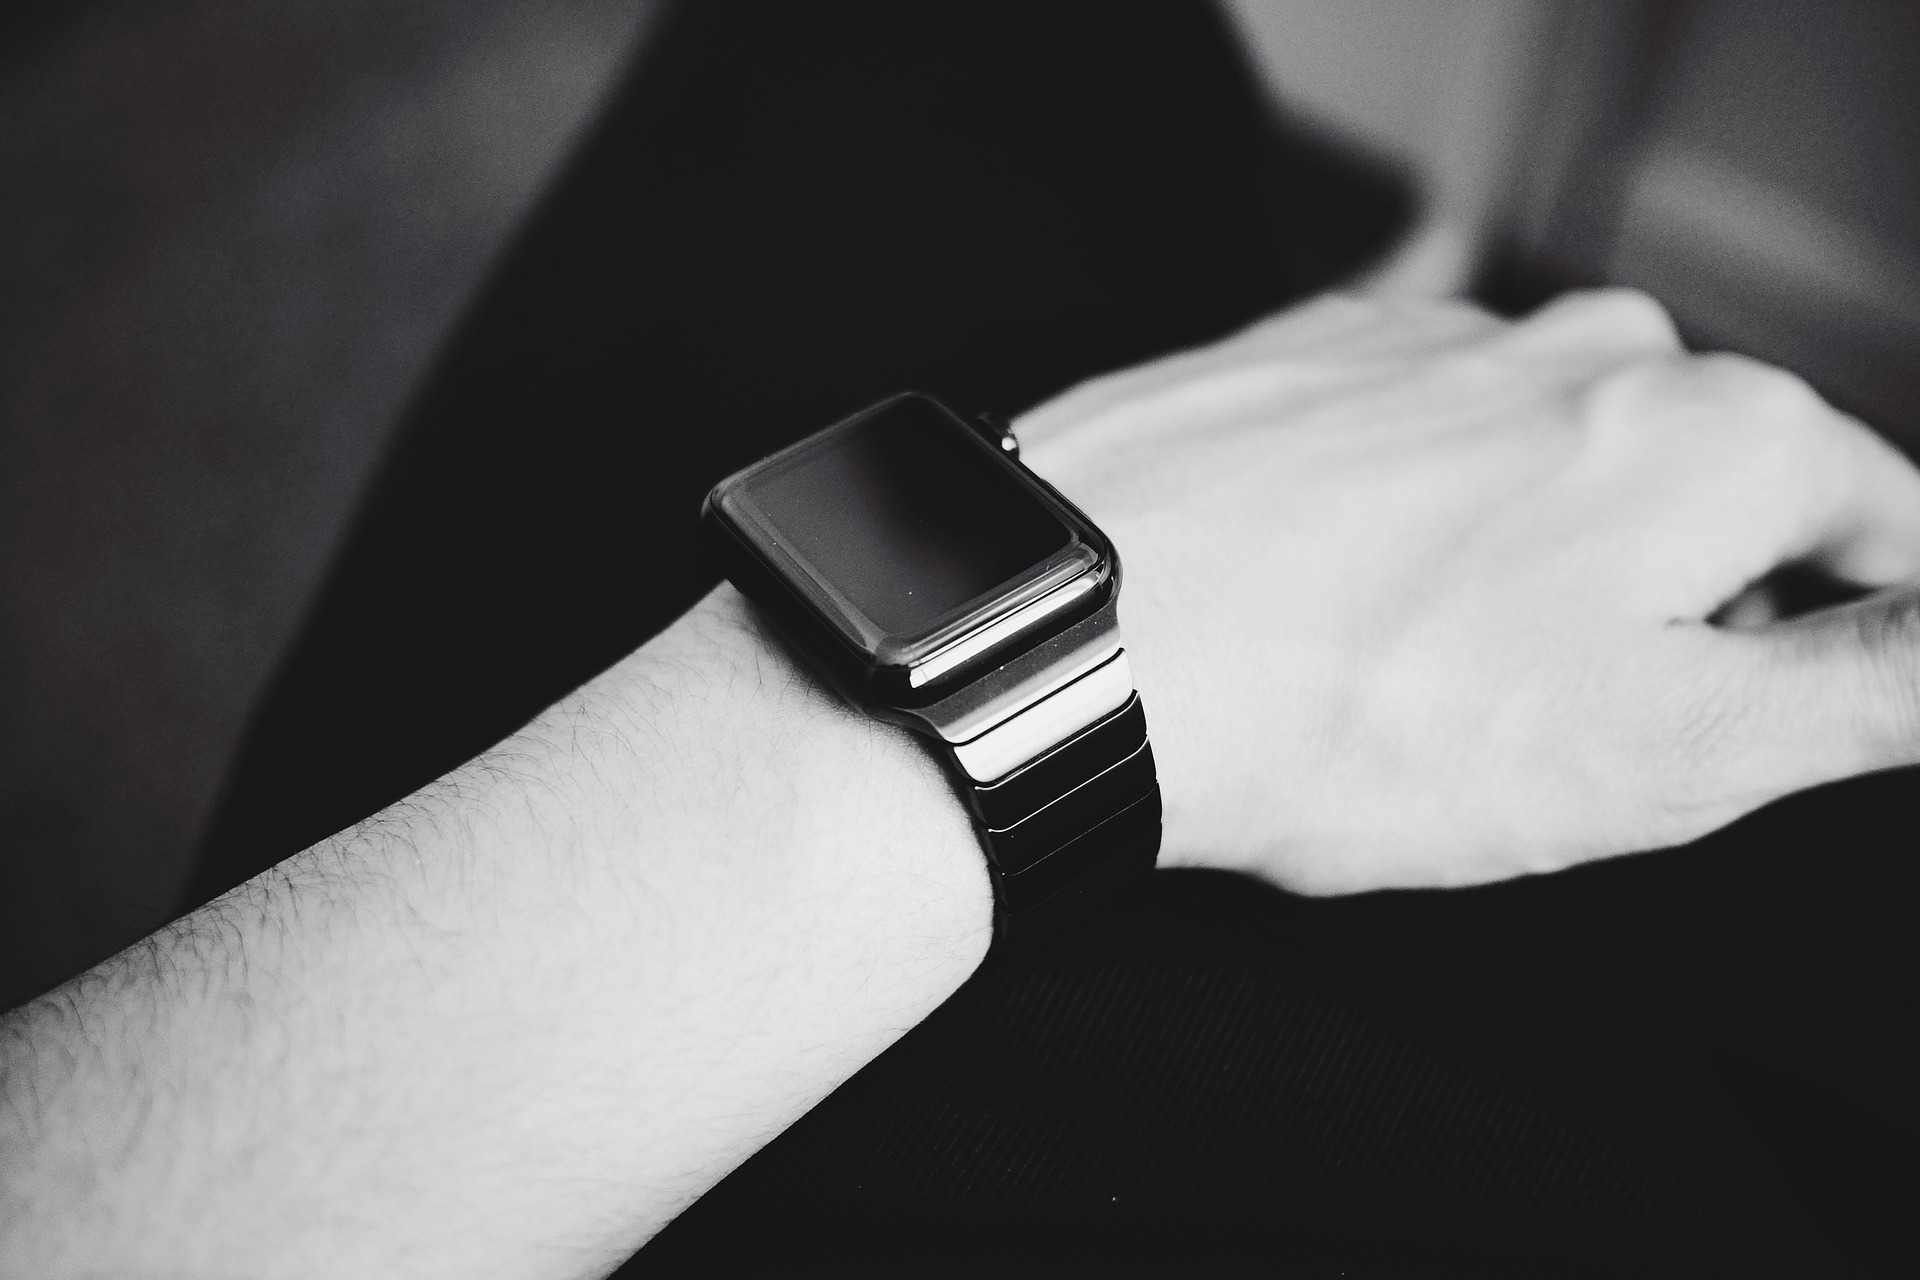 Aus datenschutzrechtlicher Perspektive bedenklich: Smart Watches und Wearables.